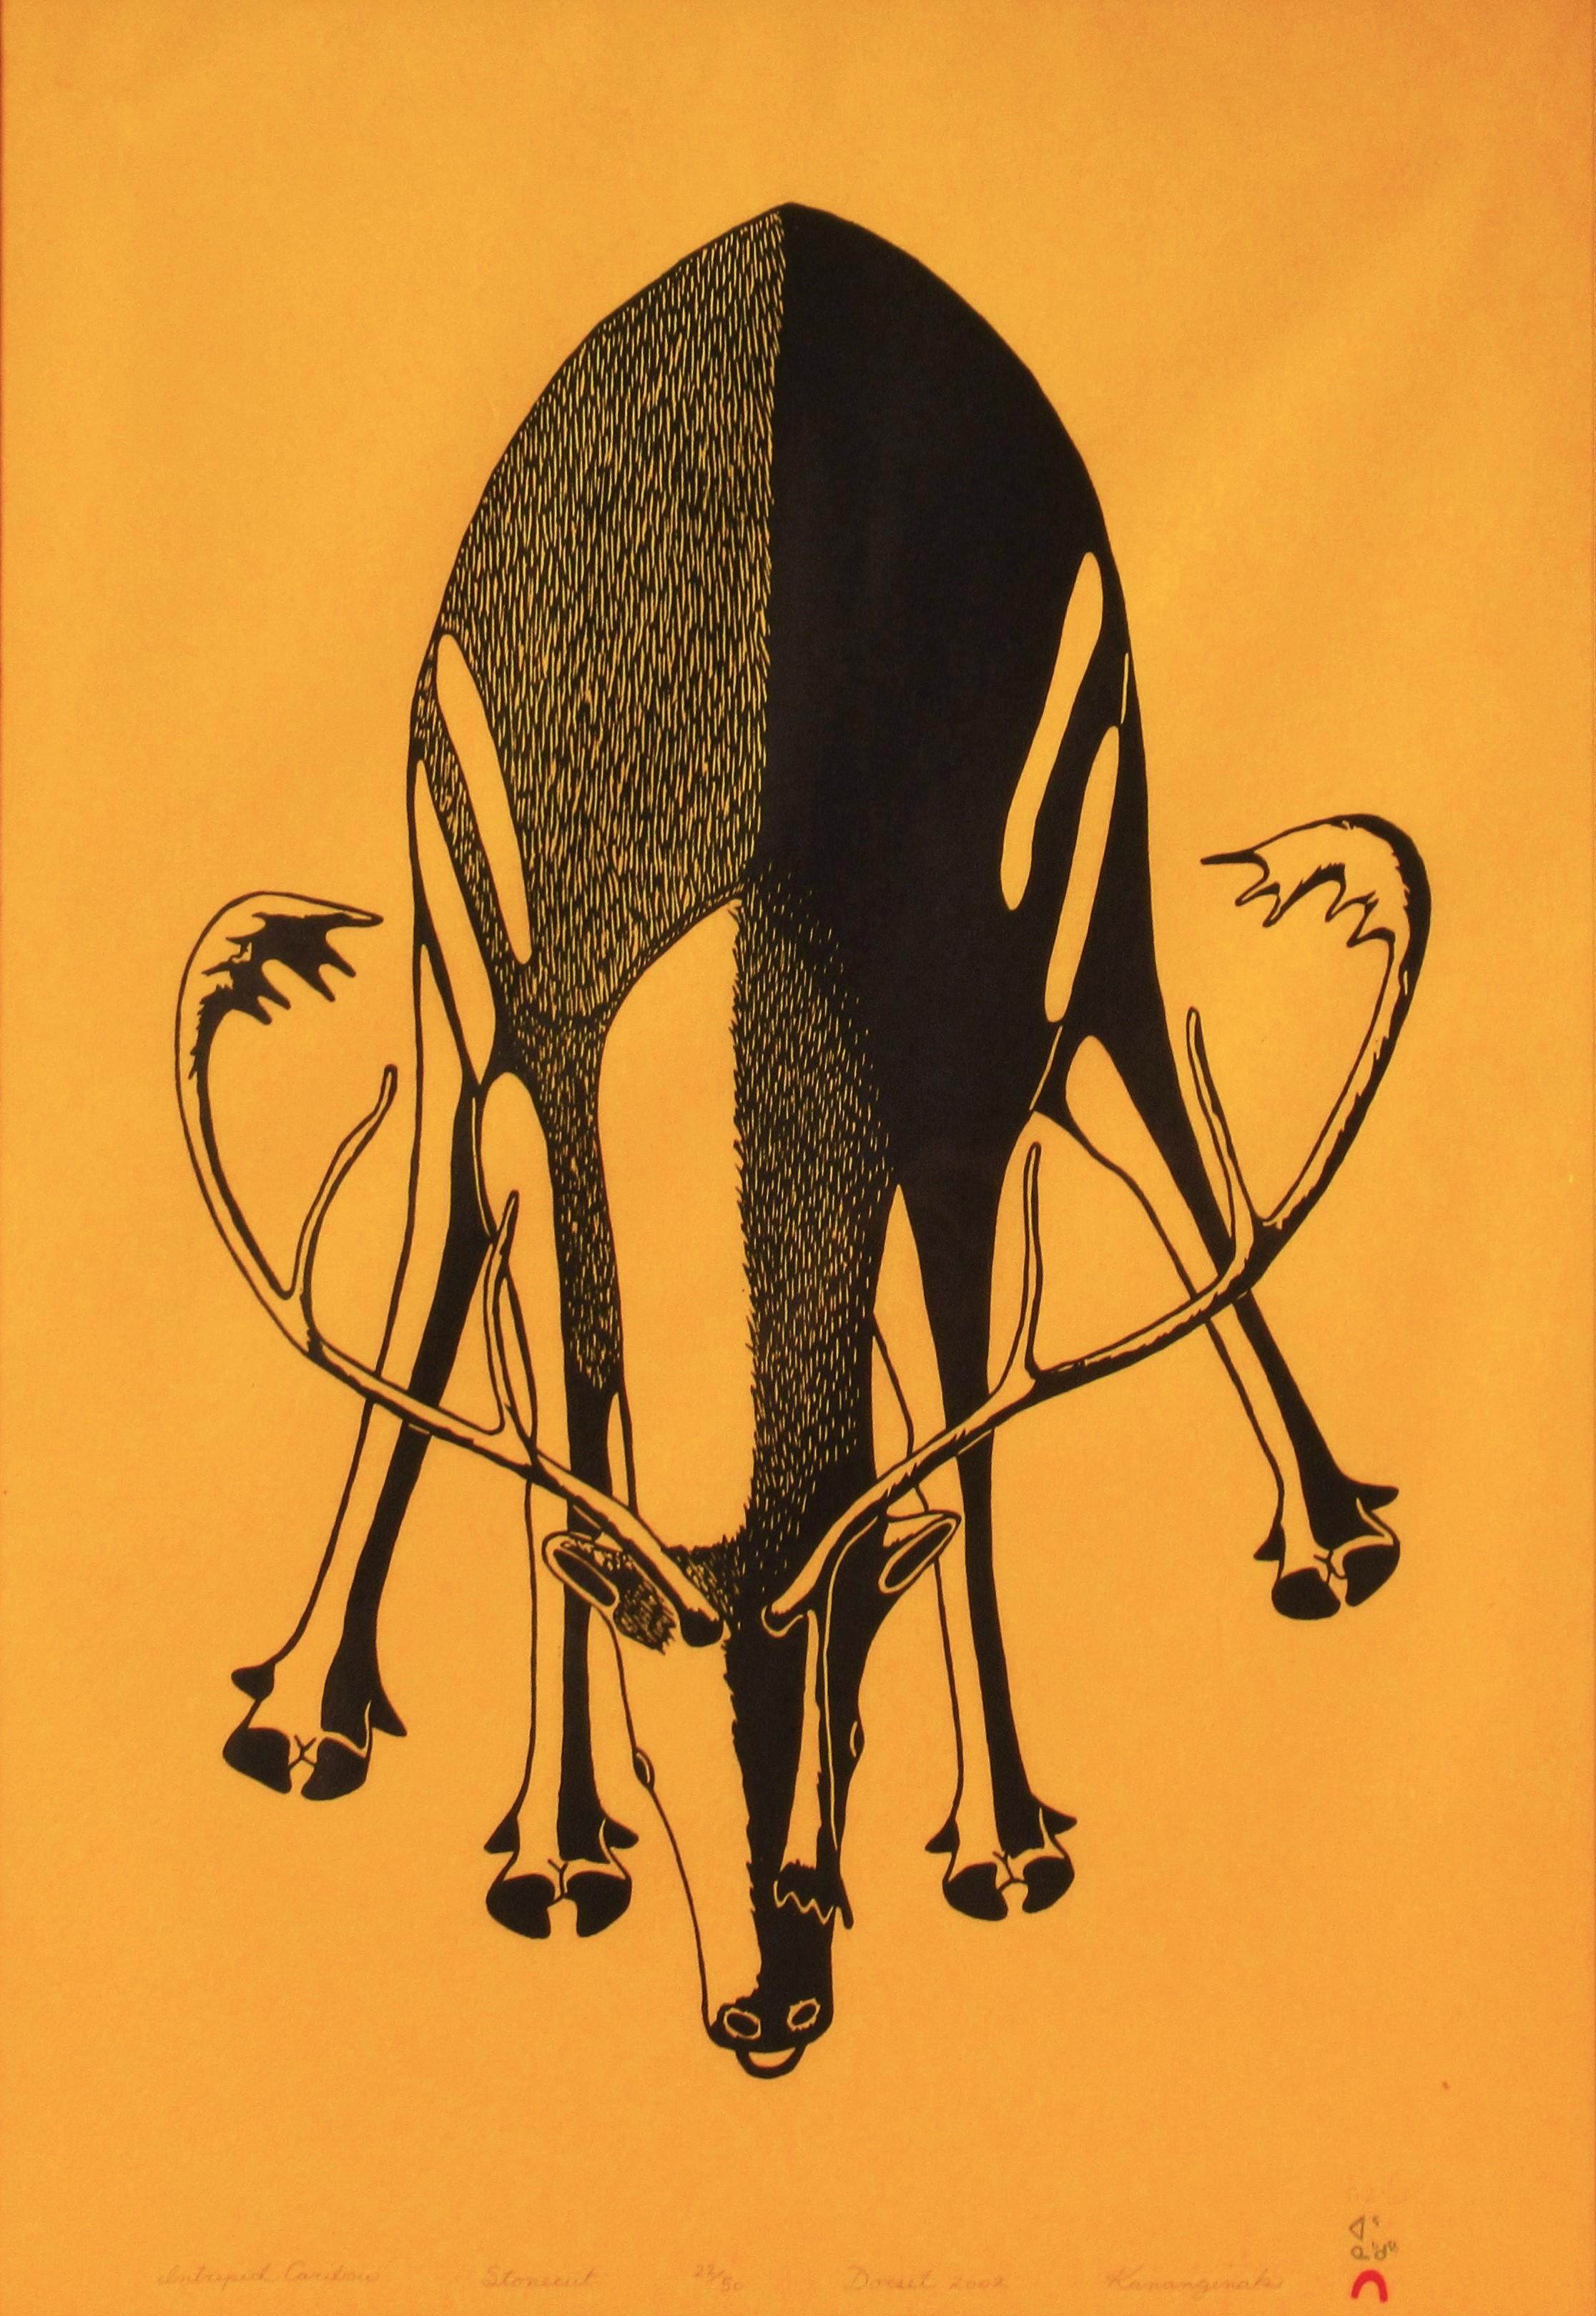 Caribou intrépide - Print de Kananginak Pootoogook